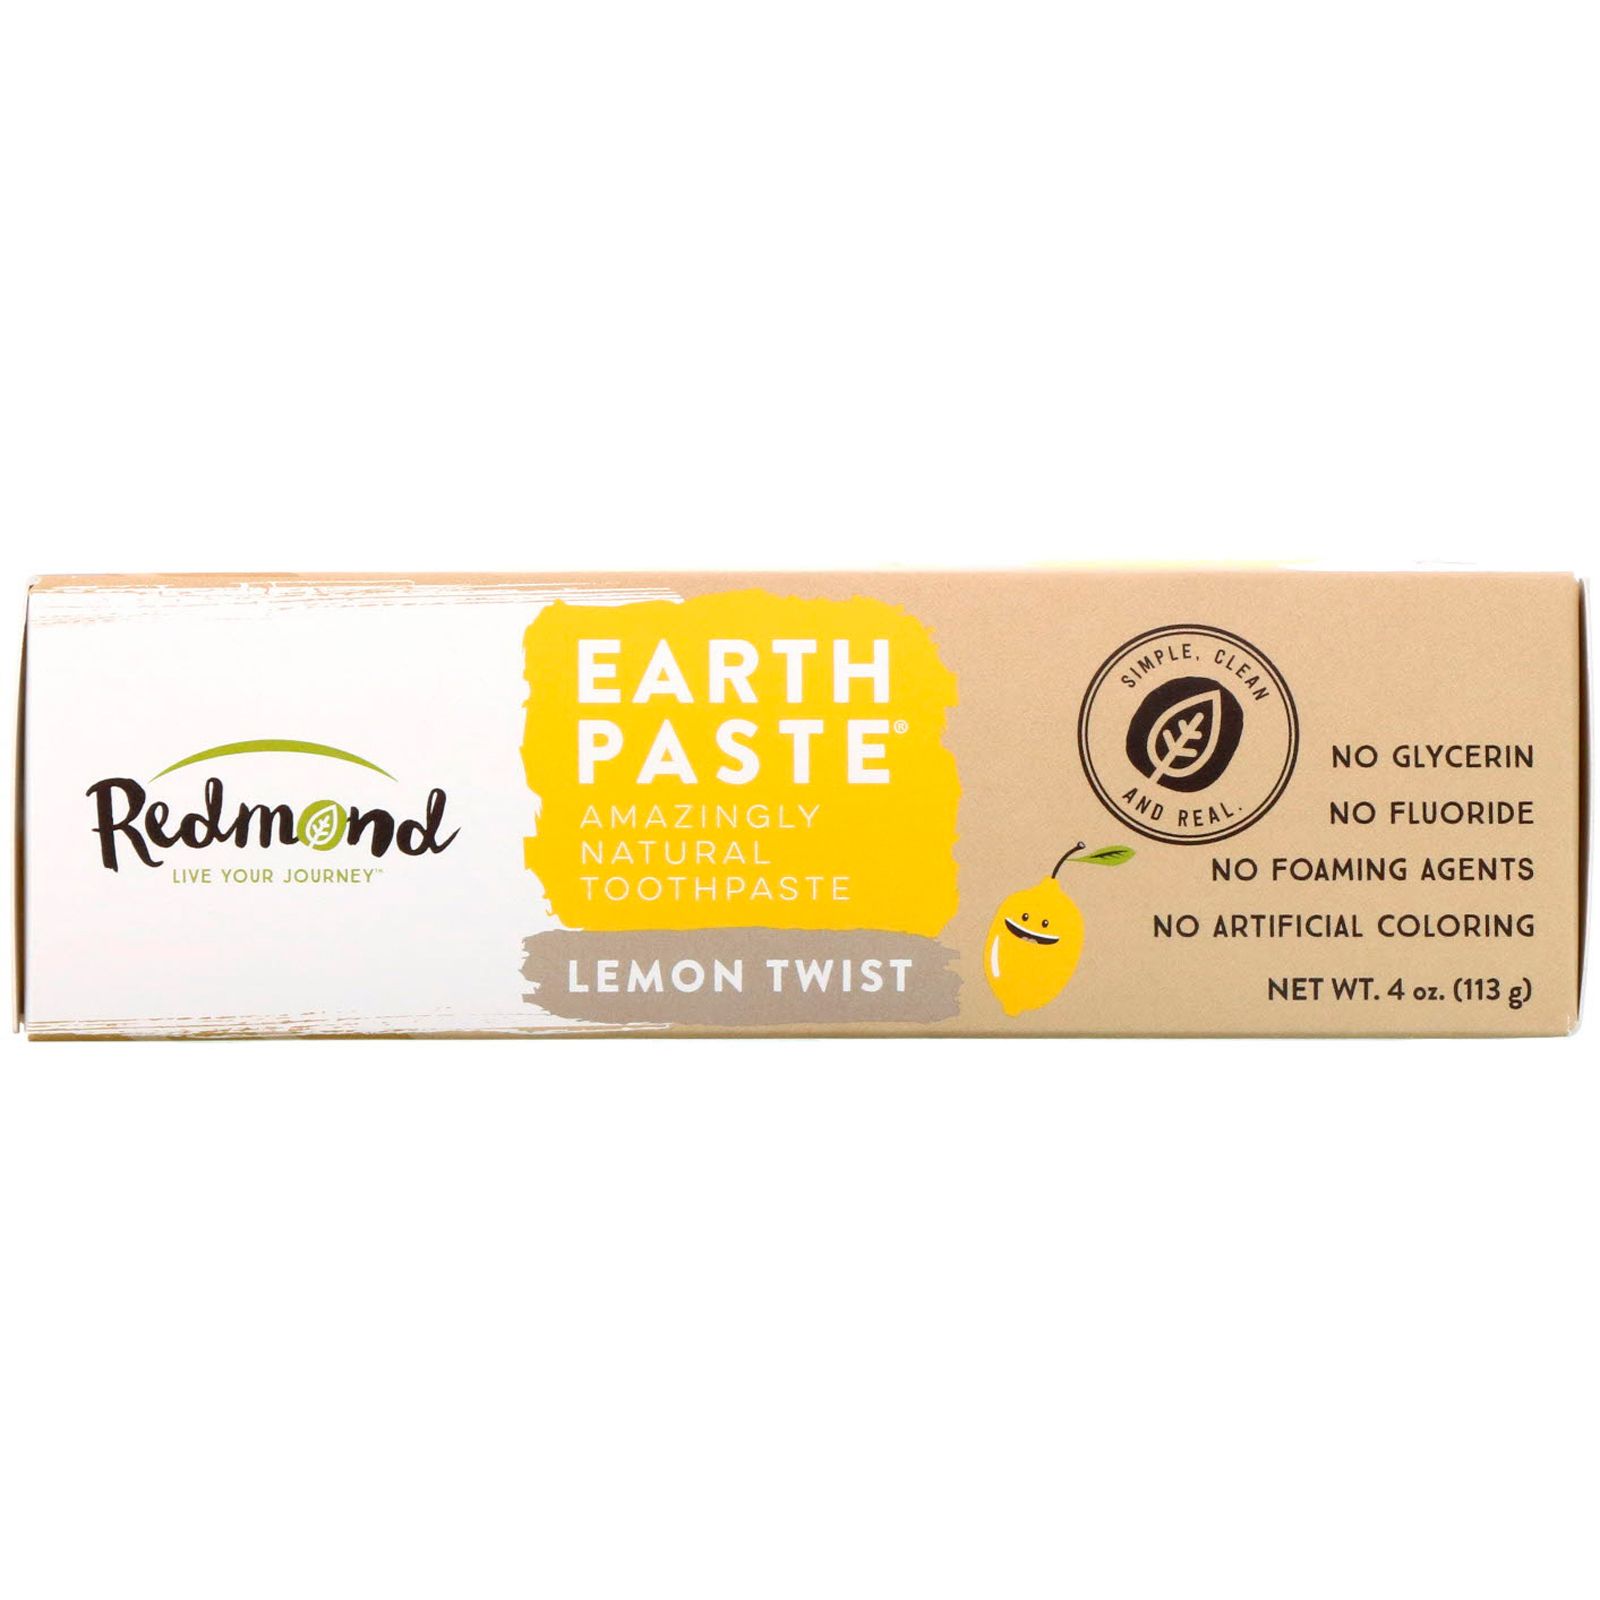 Redmond Trading Company Earthpaste невероятно натуральная зубная паста лимонная смесь 113 г (4 унции)